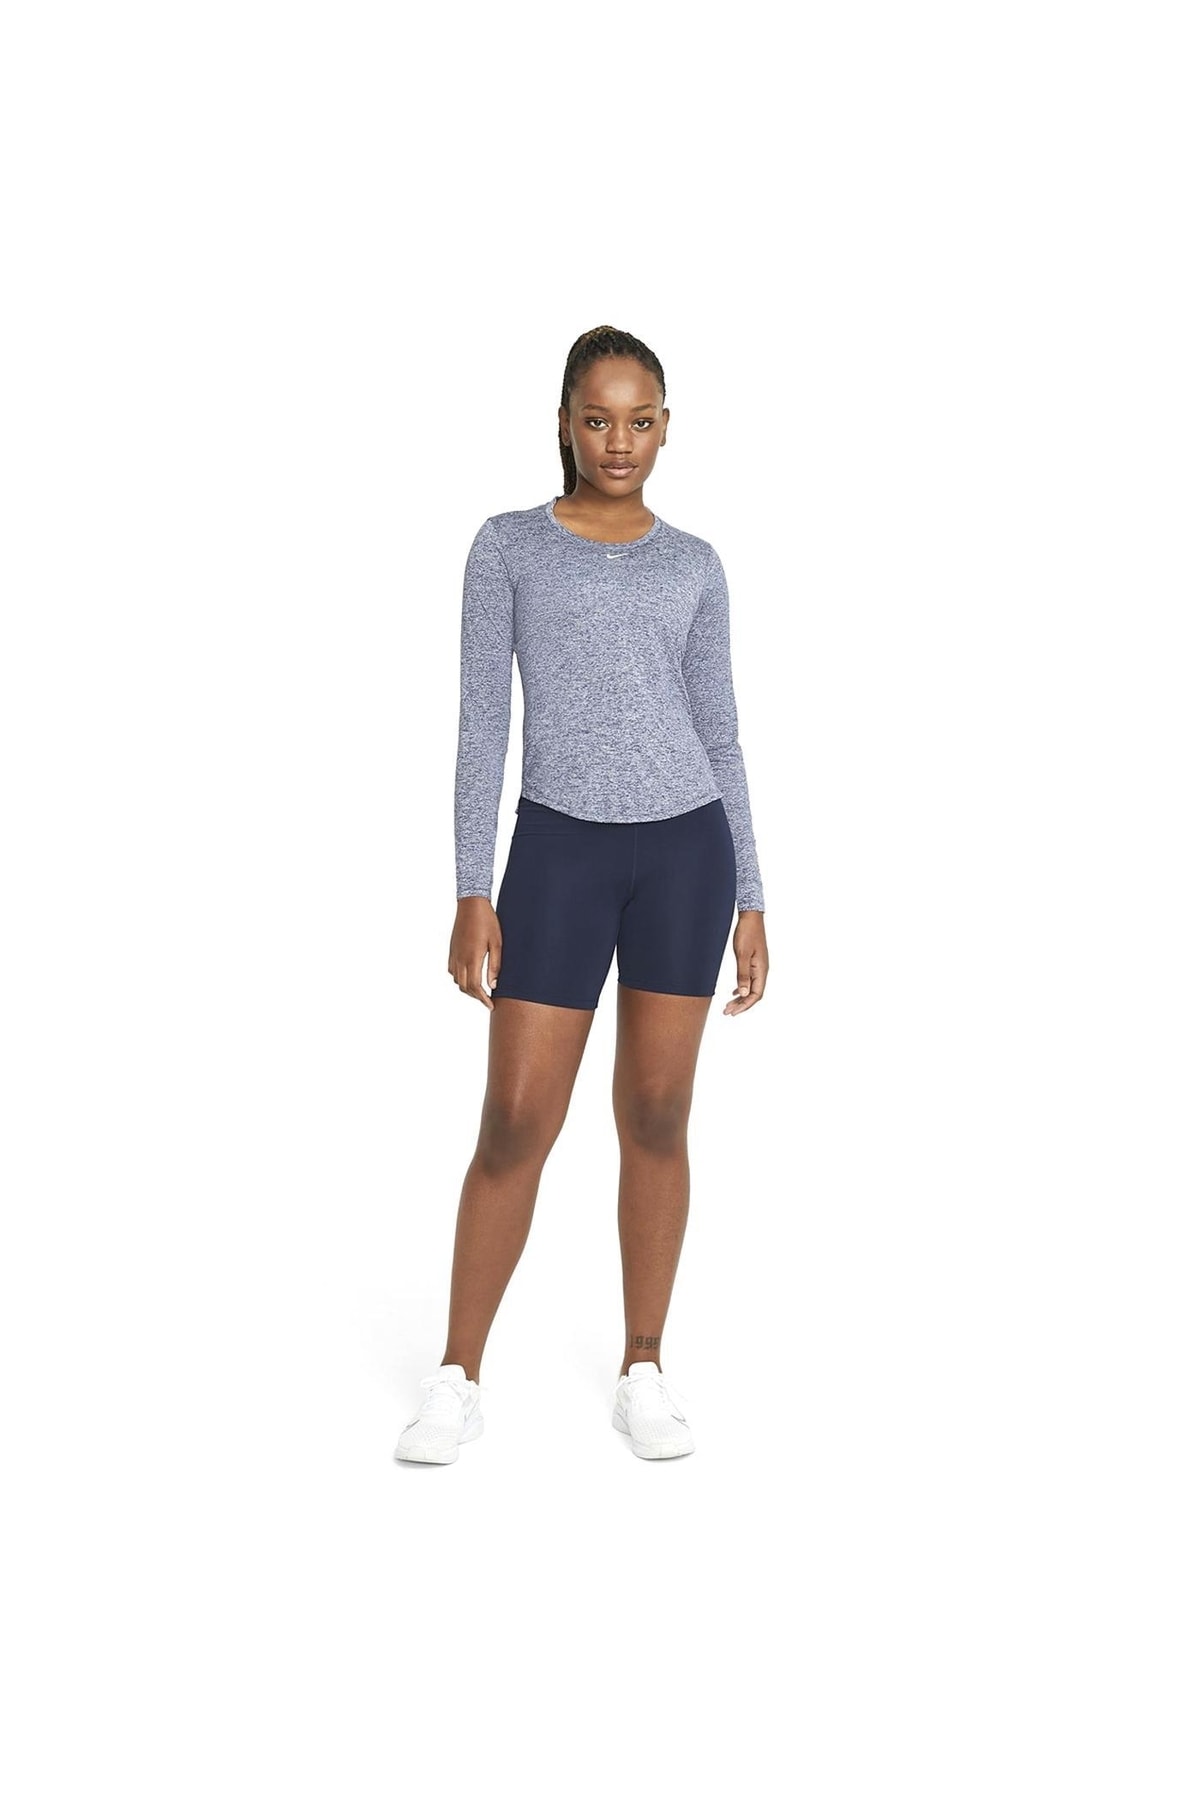 Nike Top Kadın Gri Antrenman Uzun Kollu Tişört